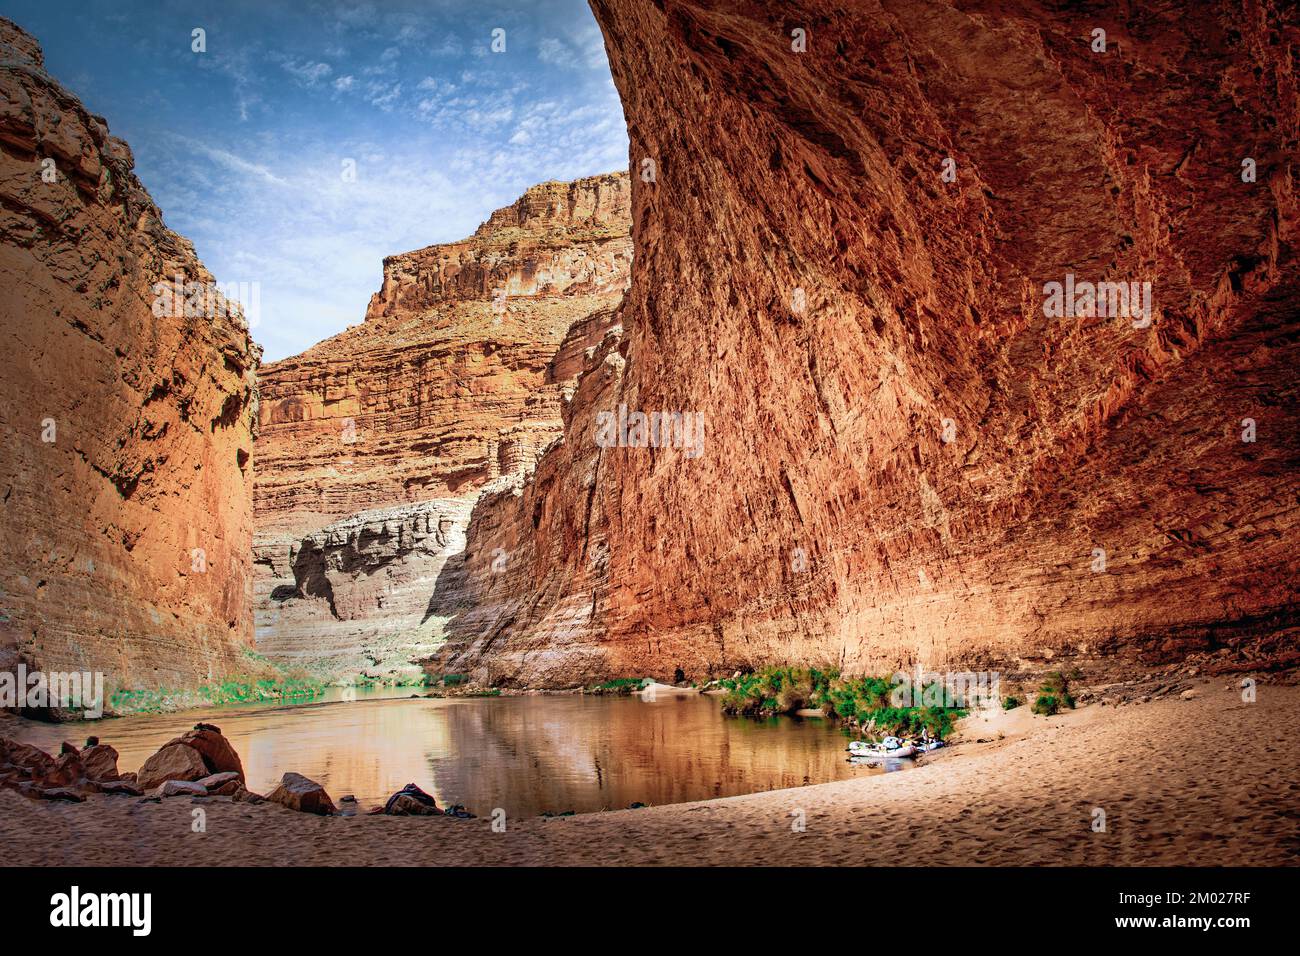 Pared roja caverna es una parada popular a lo largo del Río Colorado, el Gran Cañón, Arizona. Foto de stock